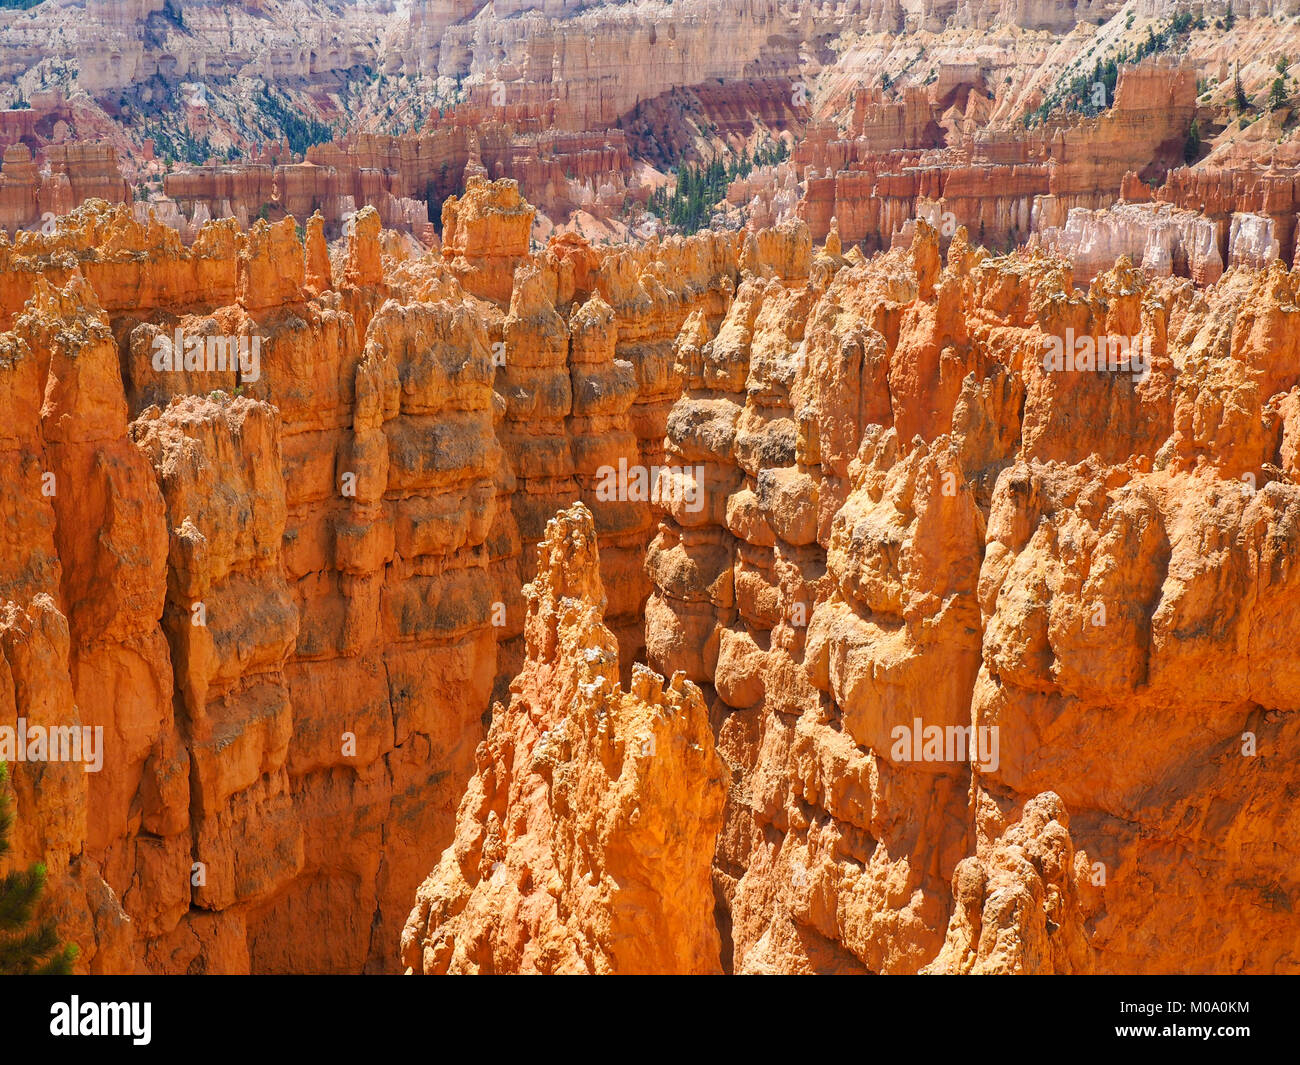 Hoodoo rock formations at Bryce Canyon National Park, Utah (USA). Stock Photo